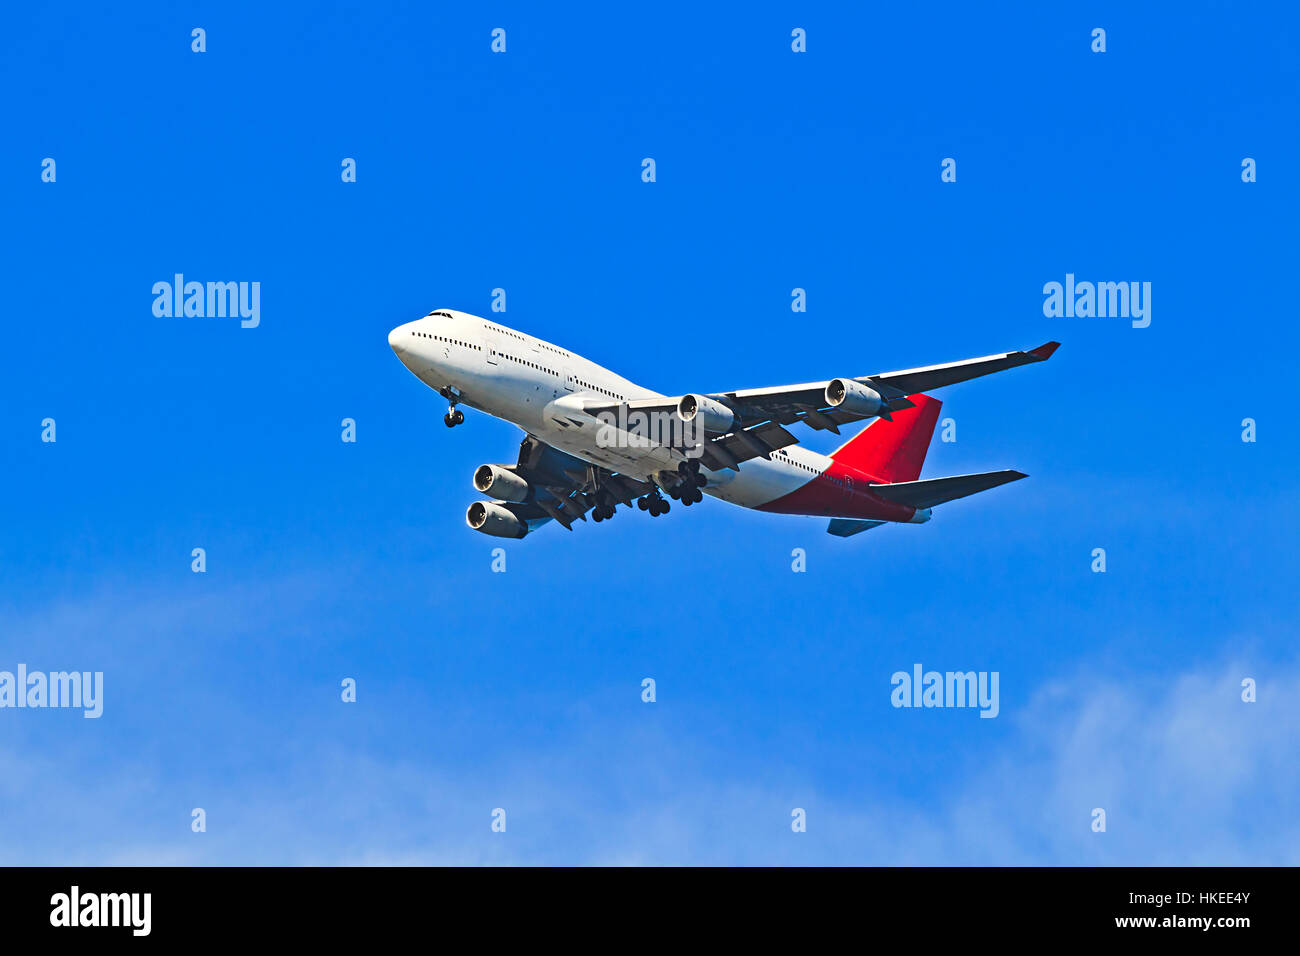 Enorme double-decker aereo midair in un colore blu cielo chiaro elevando dall' aeroporto di decollo in Australia per il trasporto di passeggeri e turisti. Foto Stock